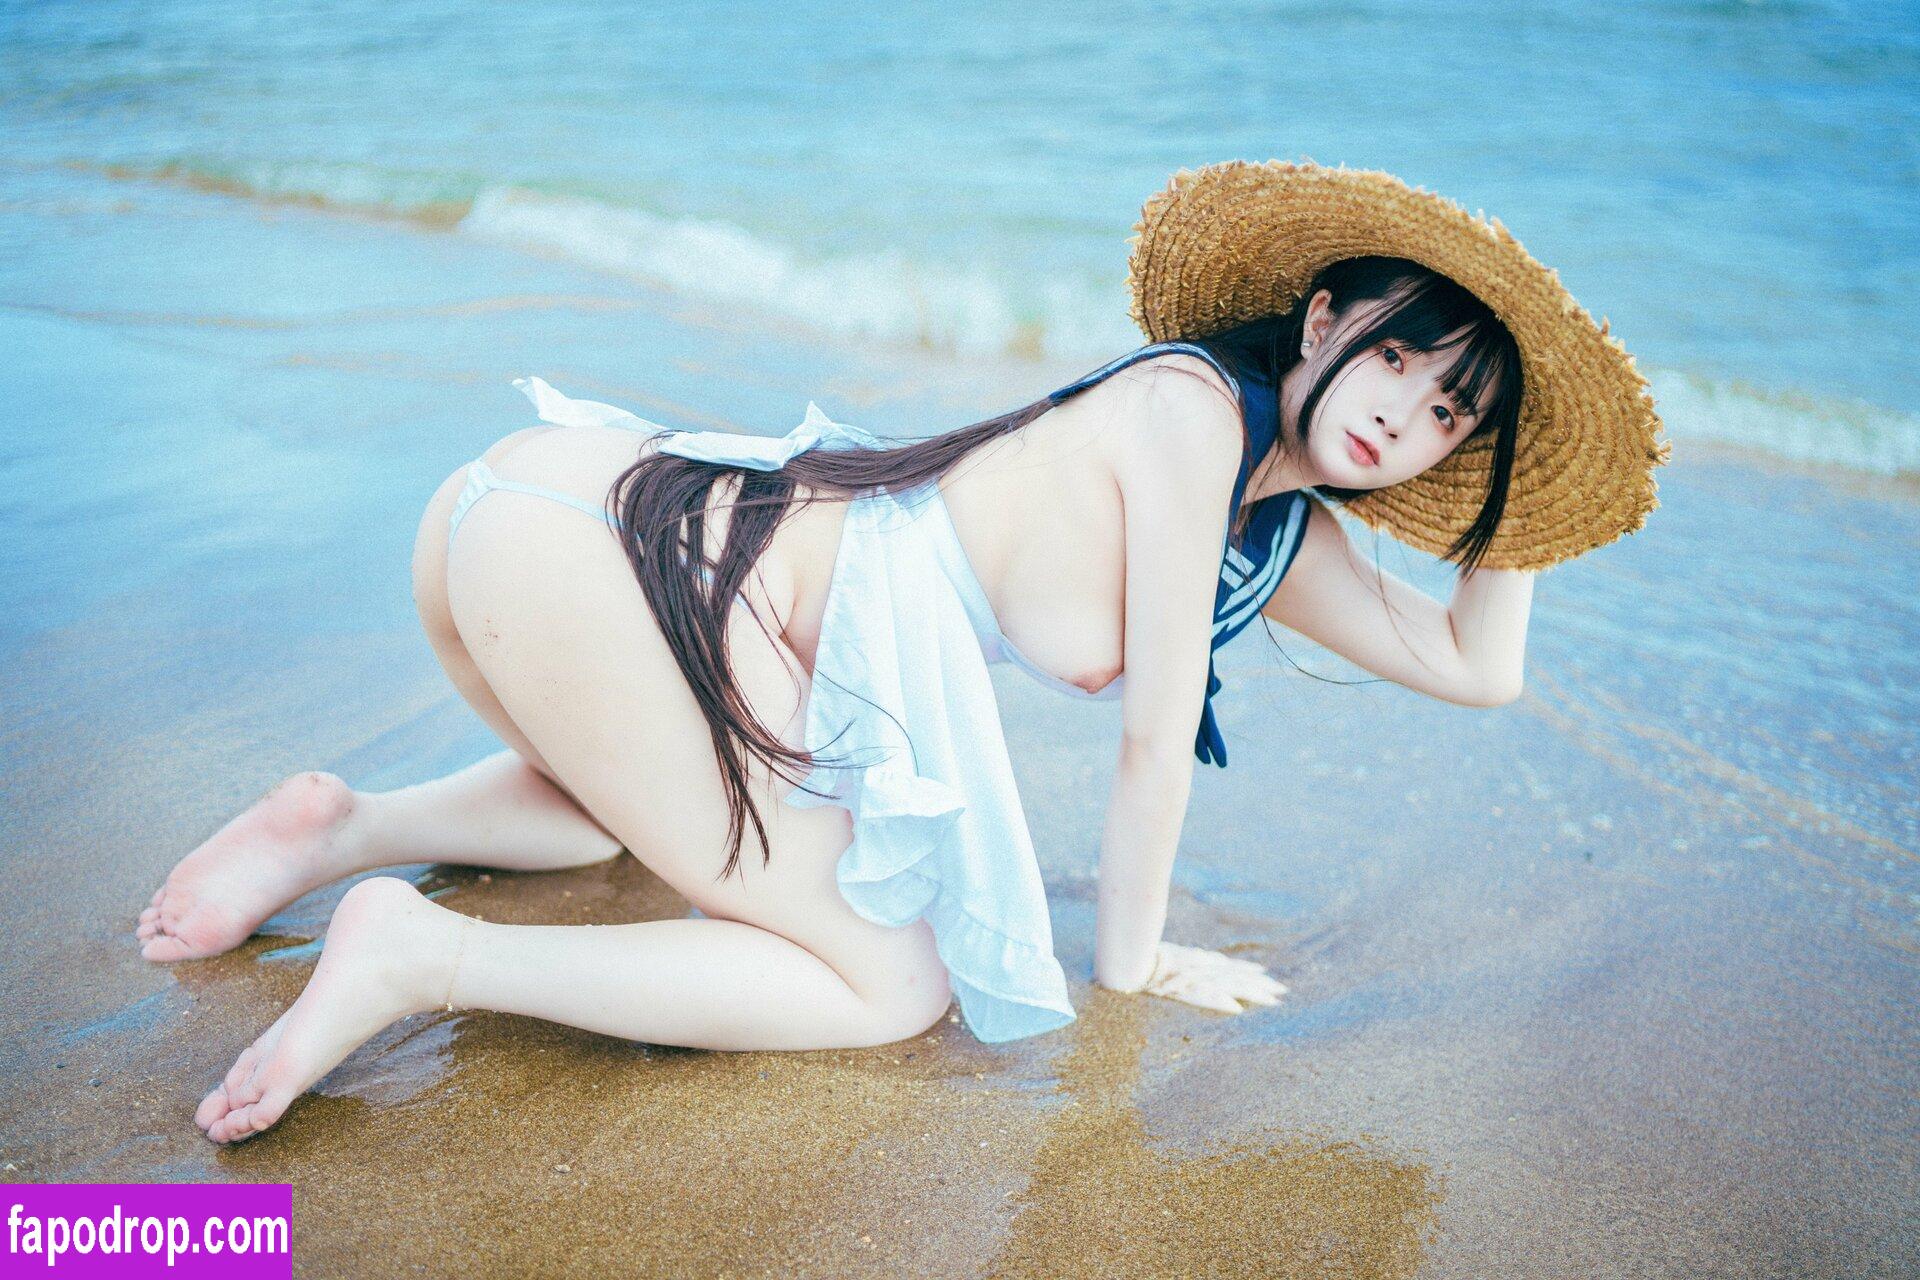 Raku_66 / raku66666 / rakuraku166 / 落落 leak of nude photo #0078 from OnlyFans or Patreon